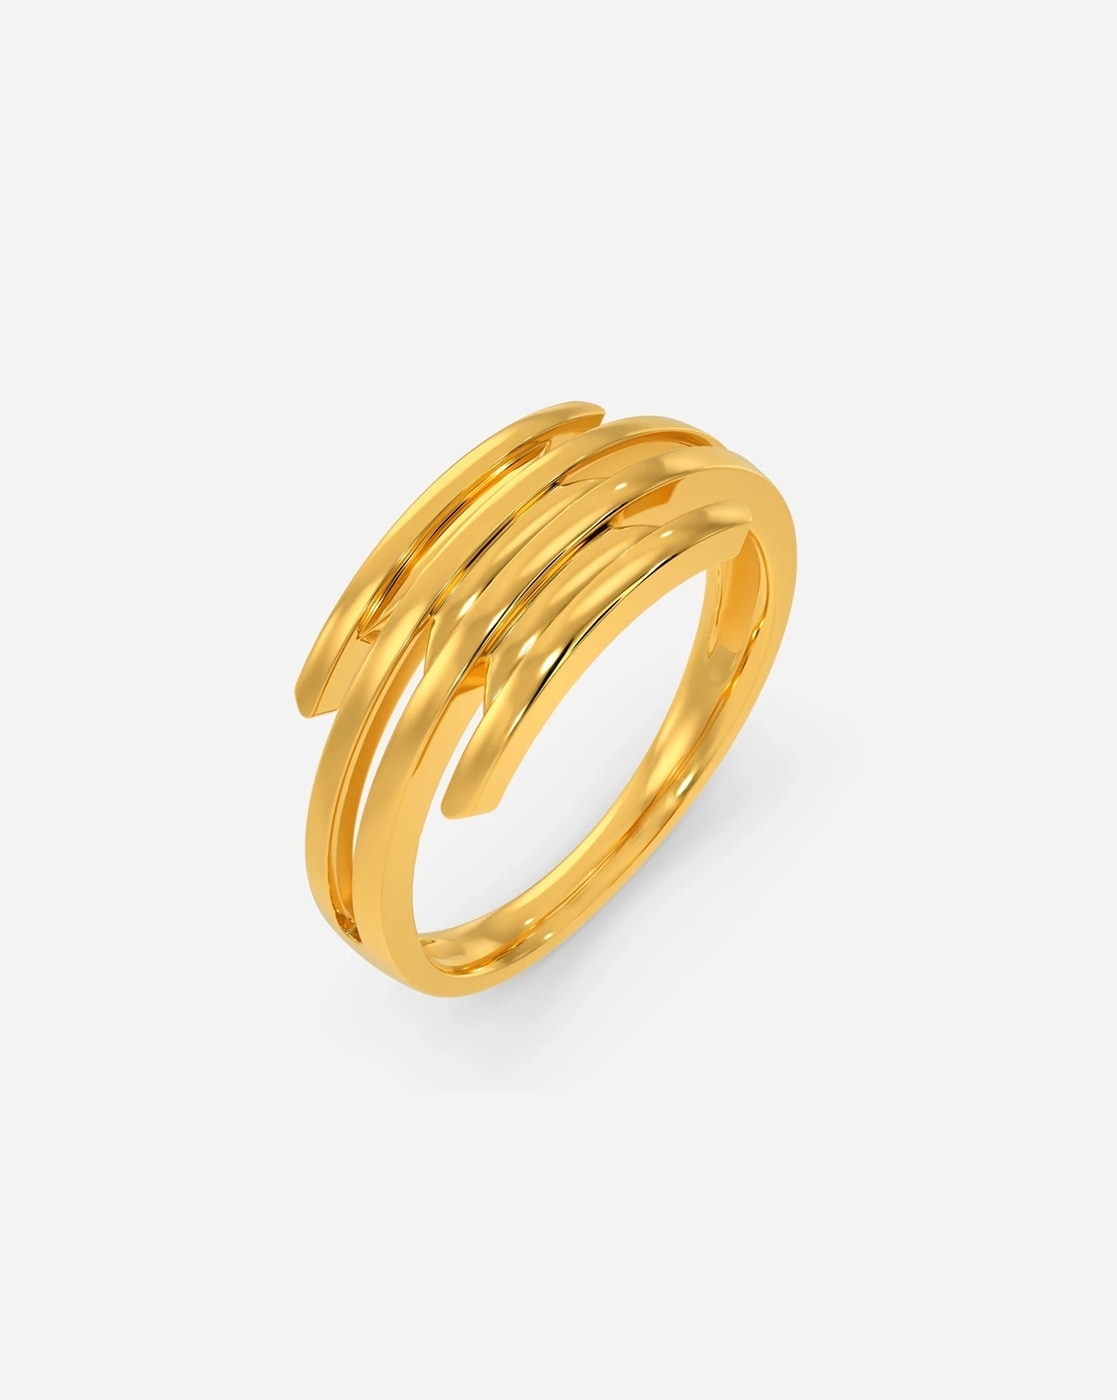 1 tole ki gold ki ring 22k Hallmark Gold #yuvrajjewellers | Instagram